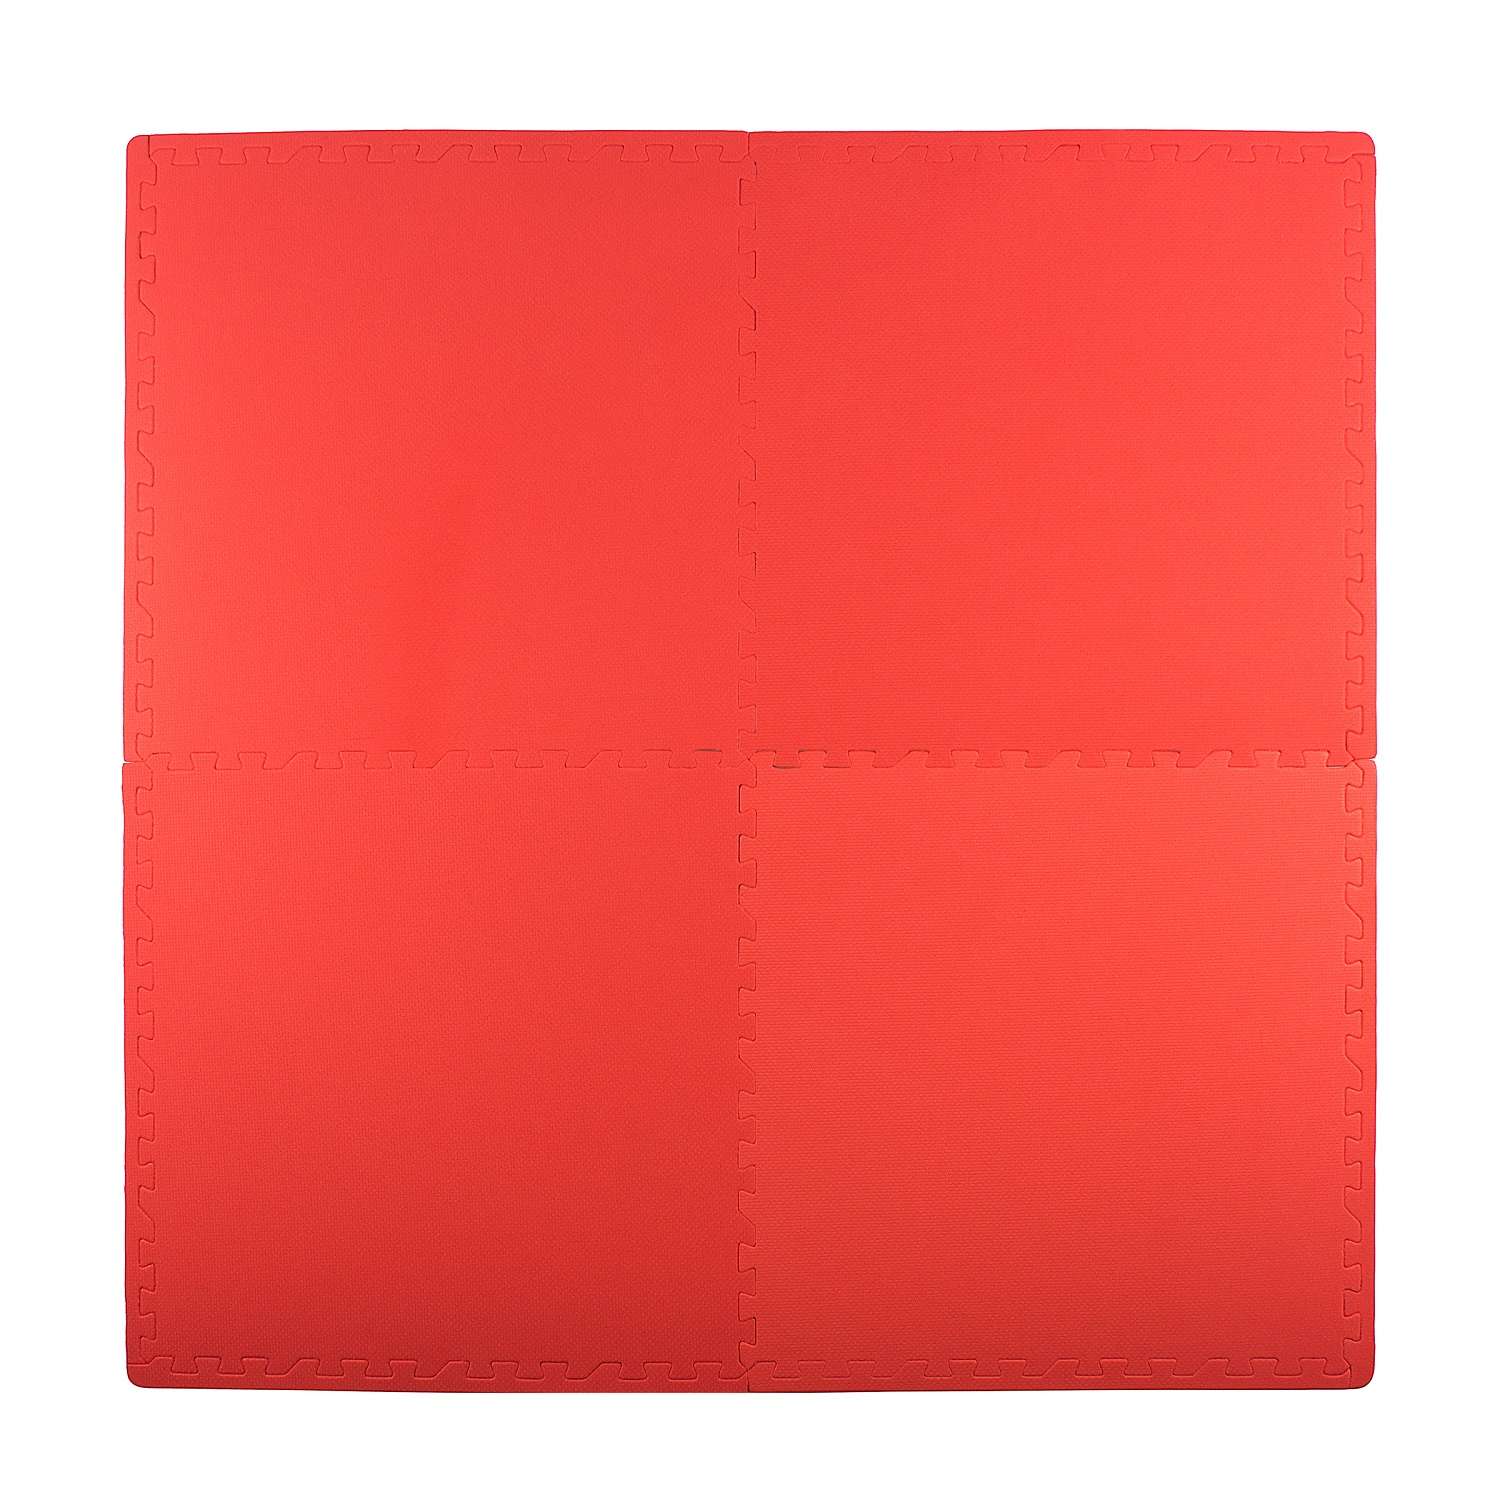 Развивающий детский коврик Eco cover игровой для ползания мягкий пол красный 60х60 - фото 2